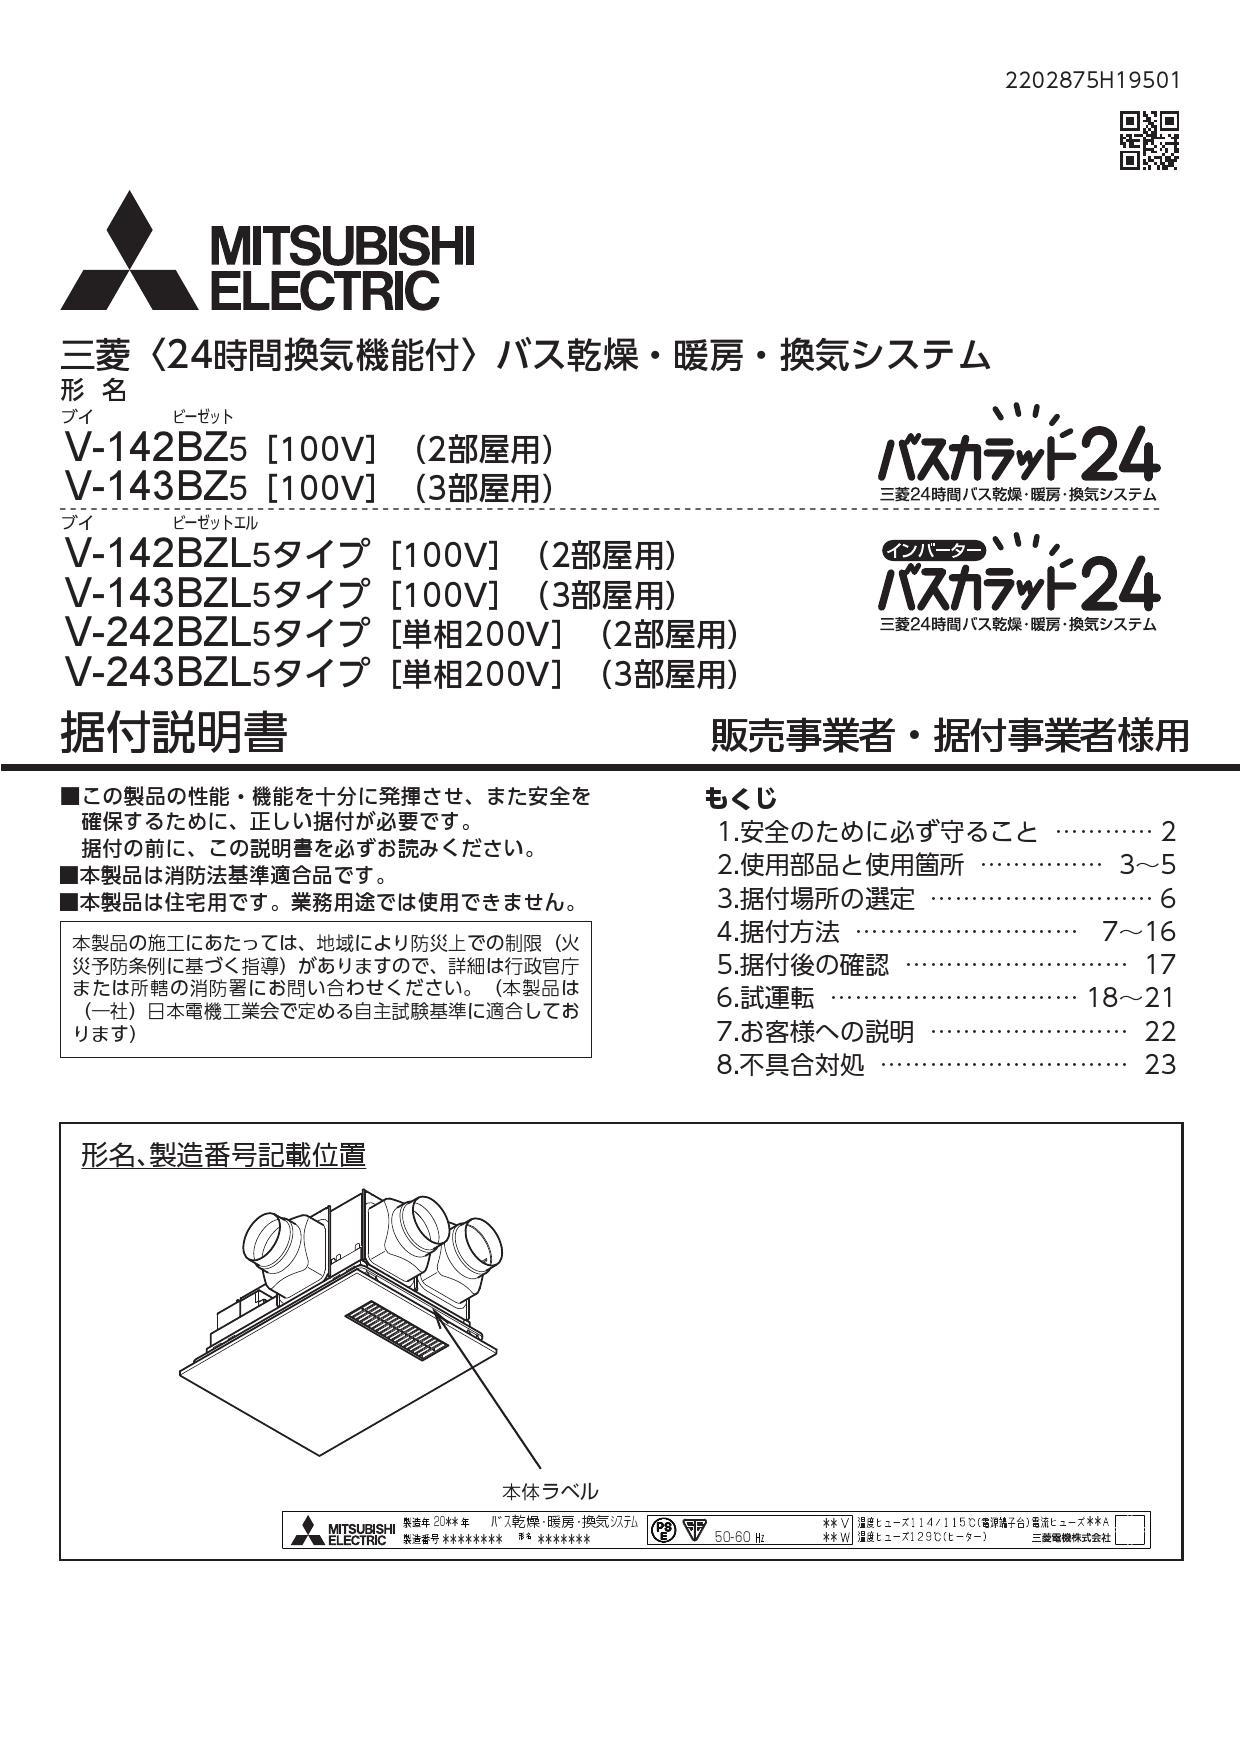 激安特価 三菱電機 MITSUBISHI ELECTRIC バス乾燥 暖房 換気システム 2部屋換気用 2部屋用 1部屋暖房 2部屋換気タイプ V−142BZL5 